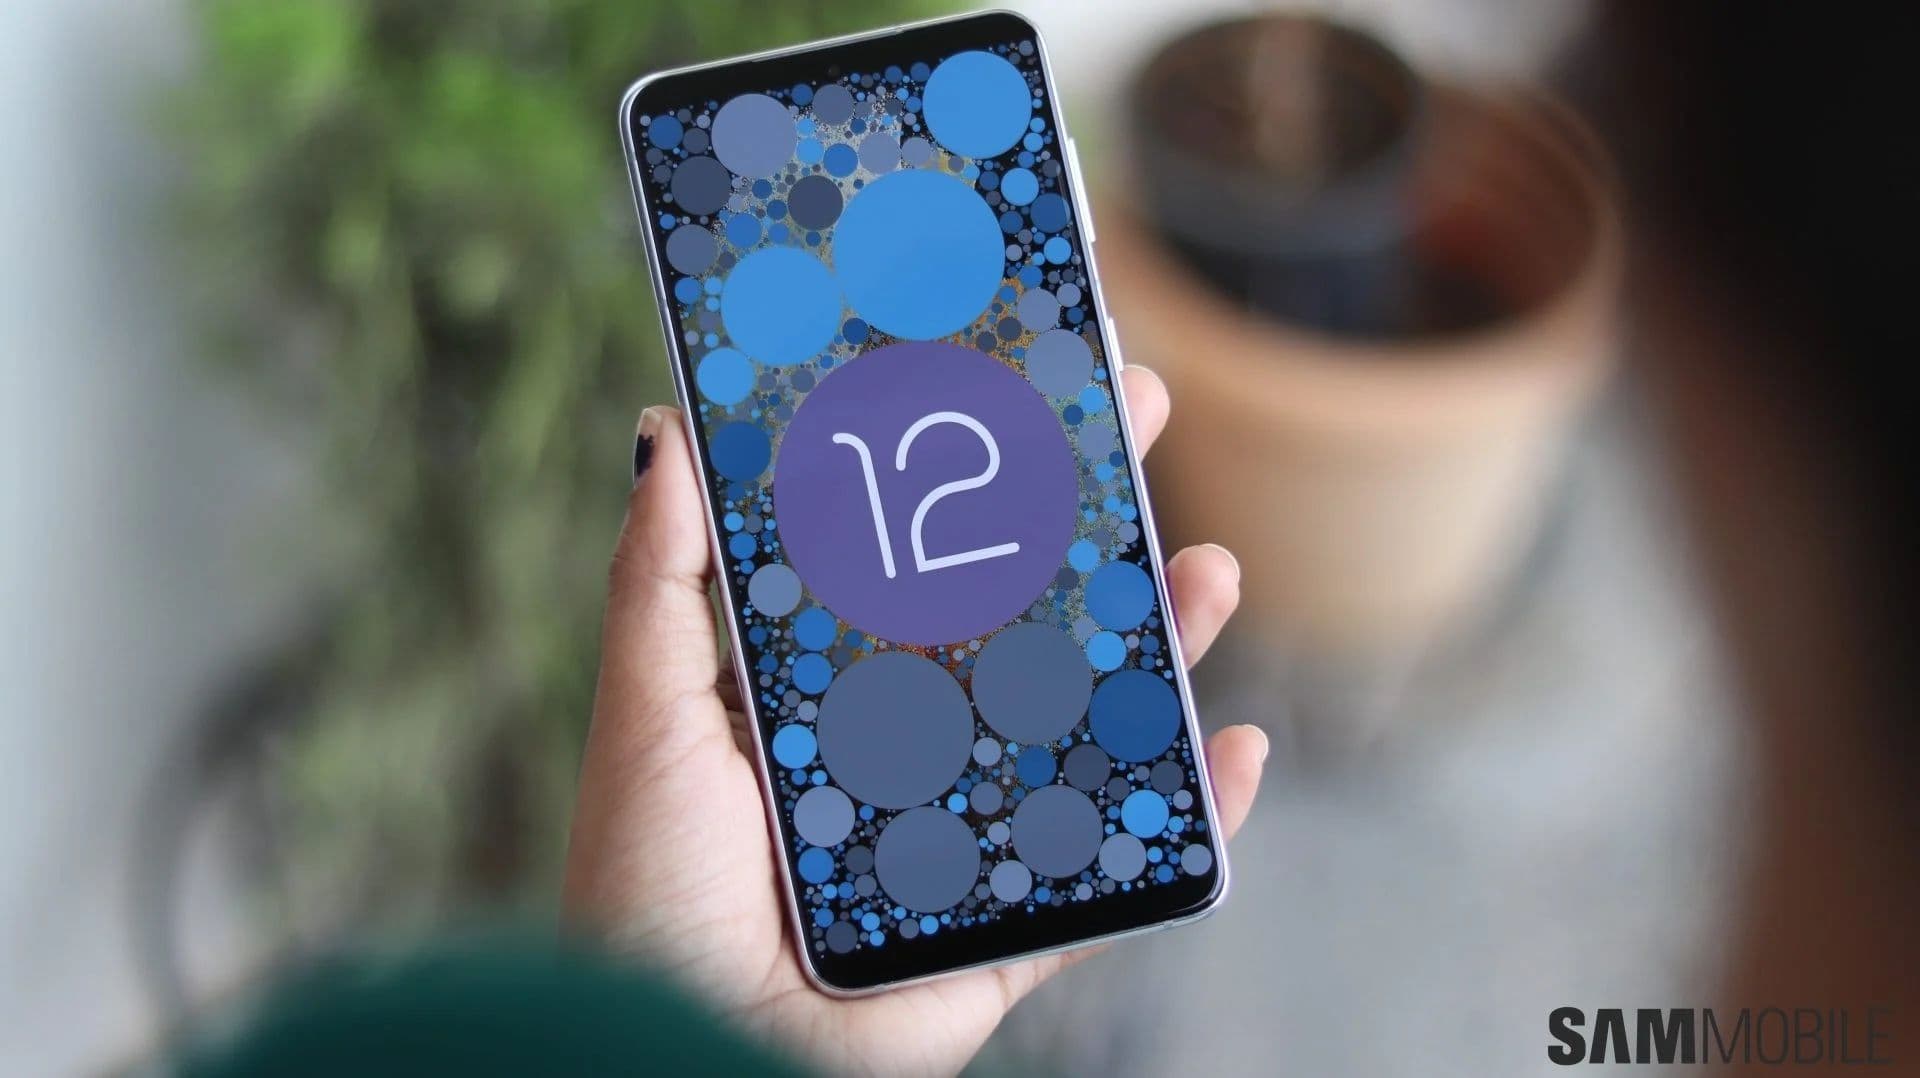 Itt az új Galaxy S21 One UI 4.0 béta frissítés